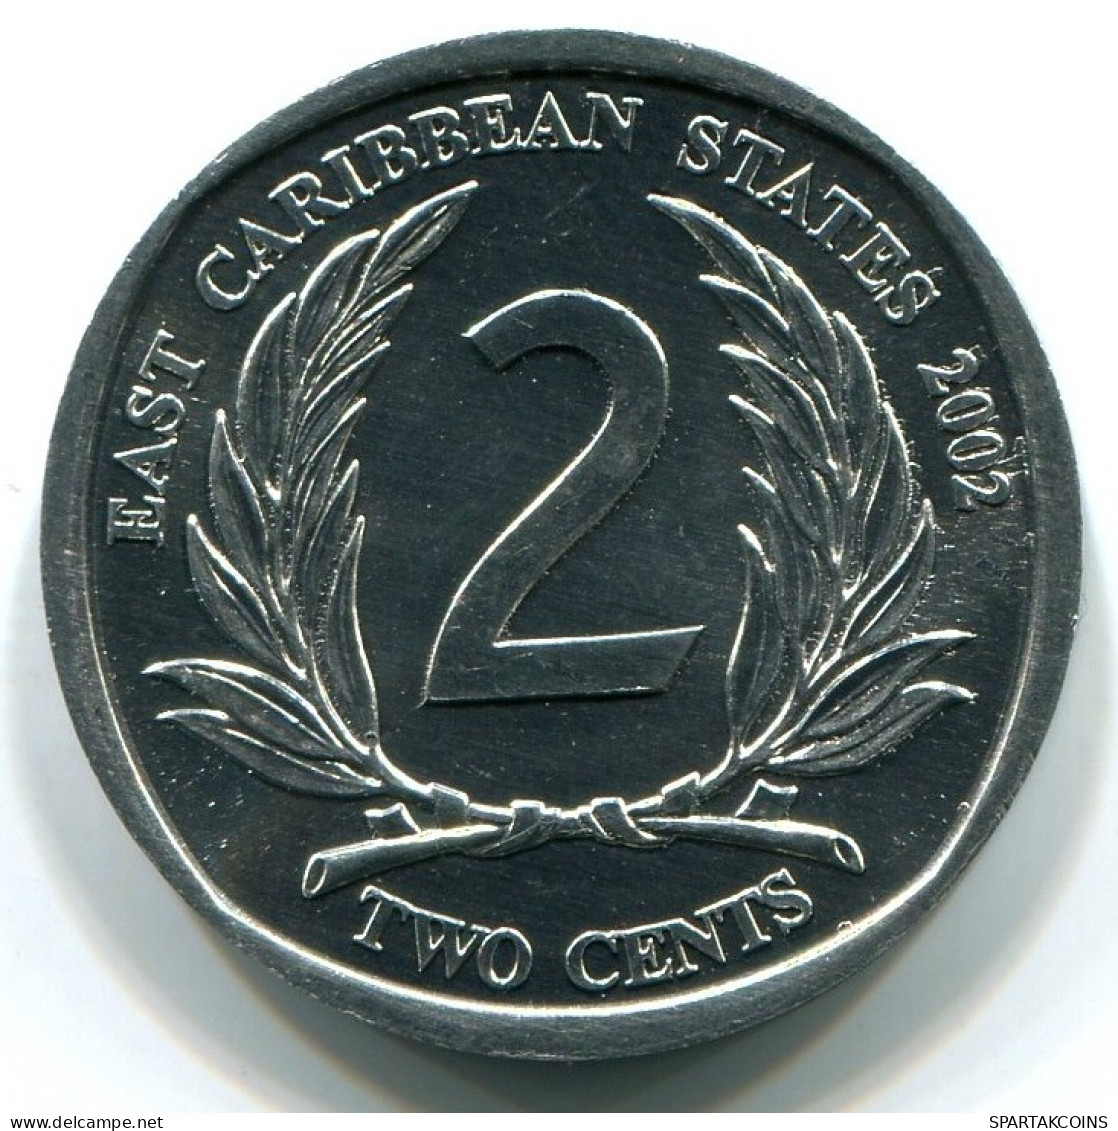 2 CENTS 2002 OST-KARIBIK EAST CARIBBEAN UNC Münze #W10878.D.A - Ostkaribischer Staaten